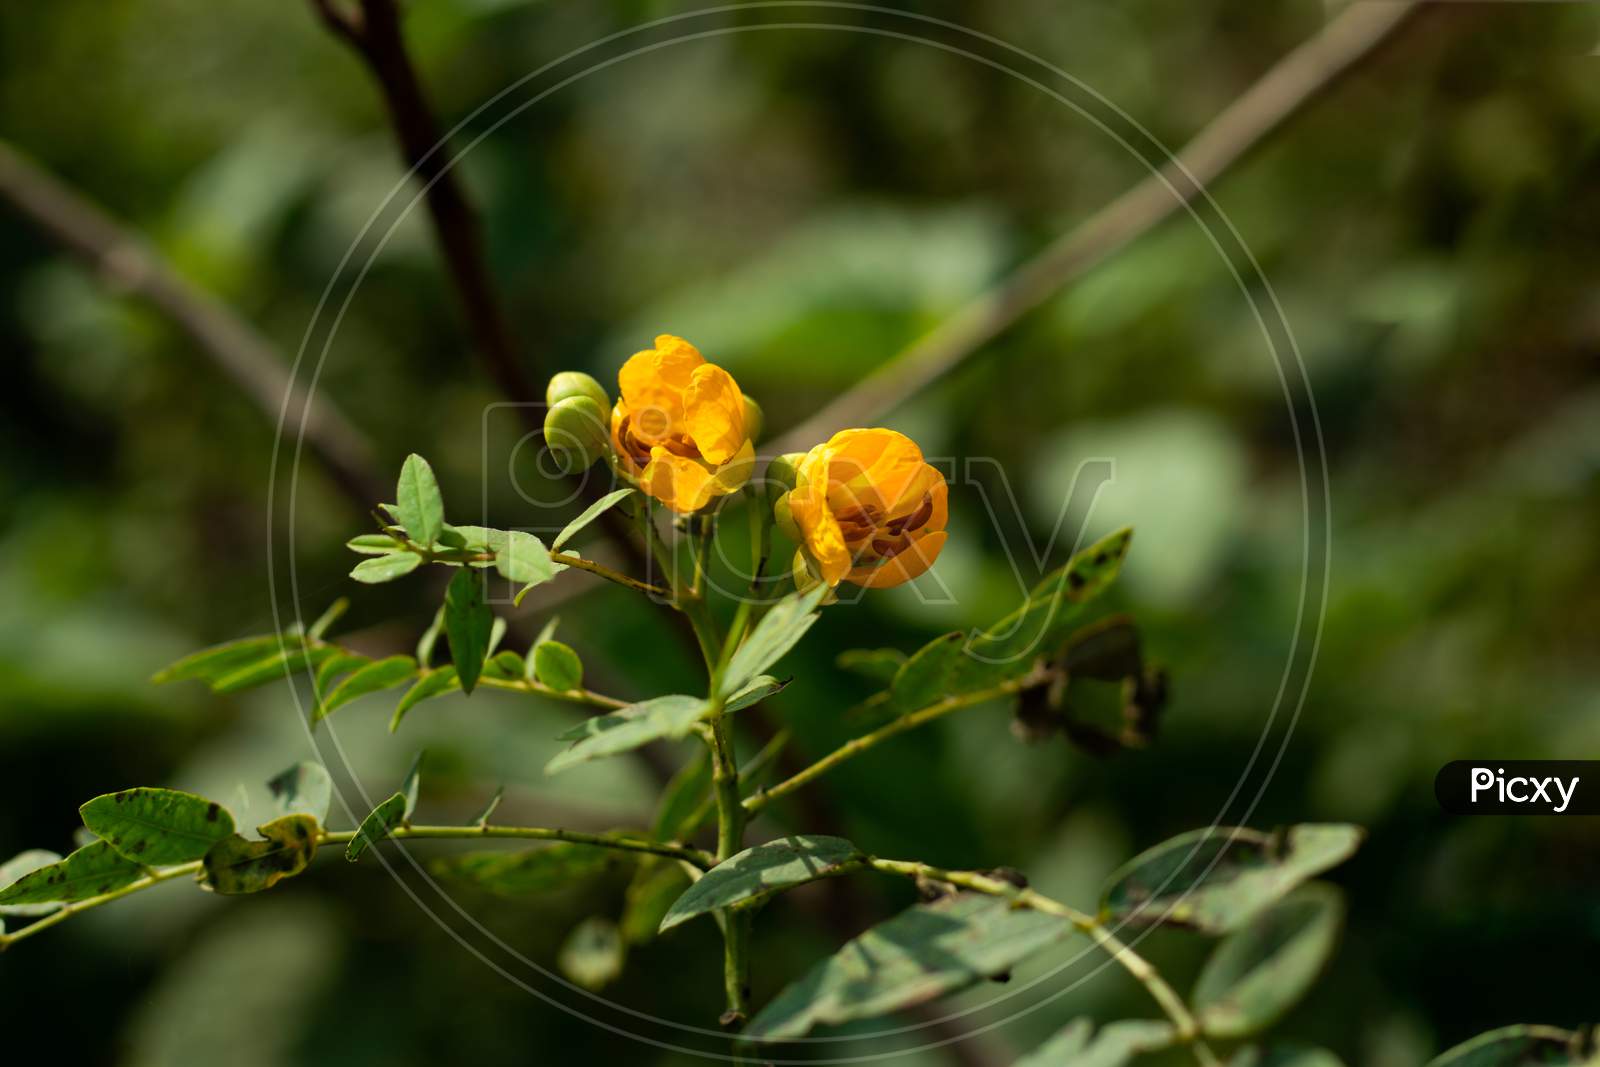 Senna Yellow Flower And Family Of Leguminosae